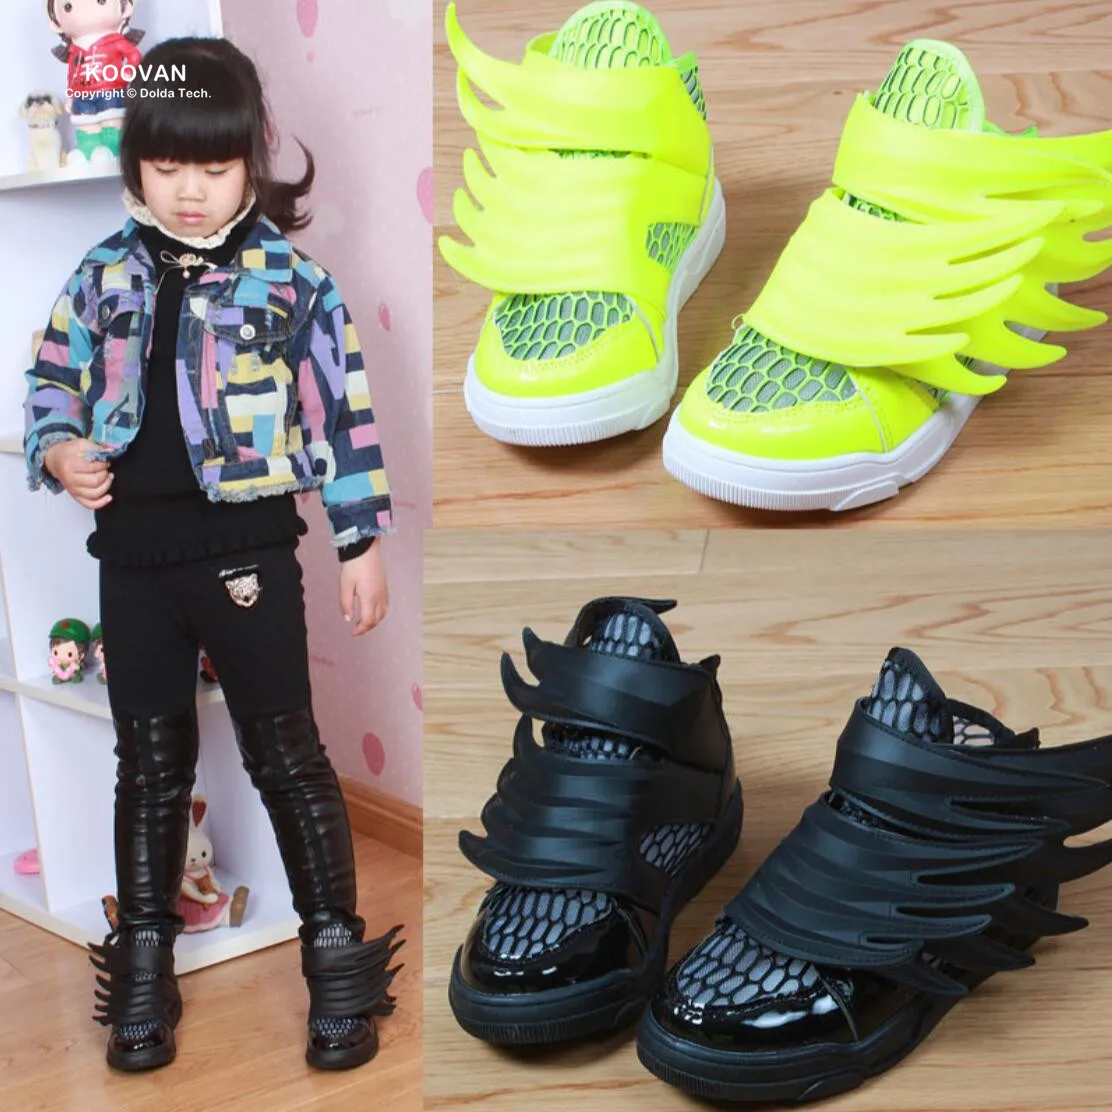 Koovan/детей Sneakers 2017 Весна Модная детская одежда Детская обувь для маленьких мальчиков и девочек Sneakers спортивные Chaussures черные крылья сетки